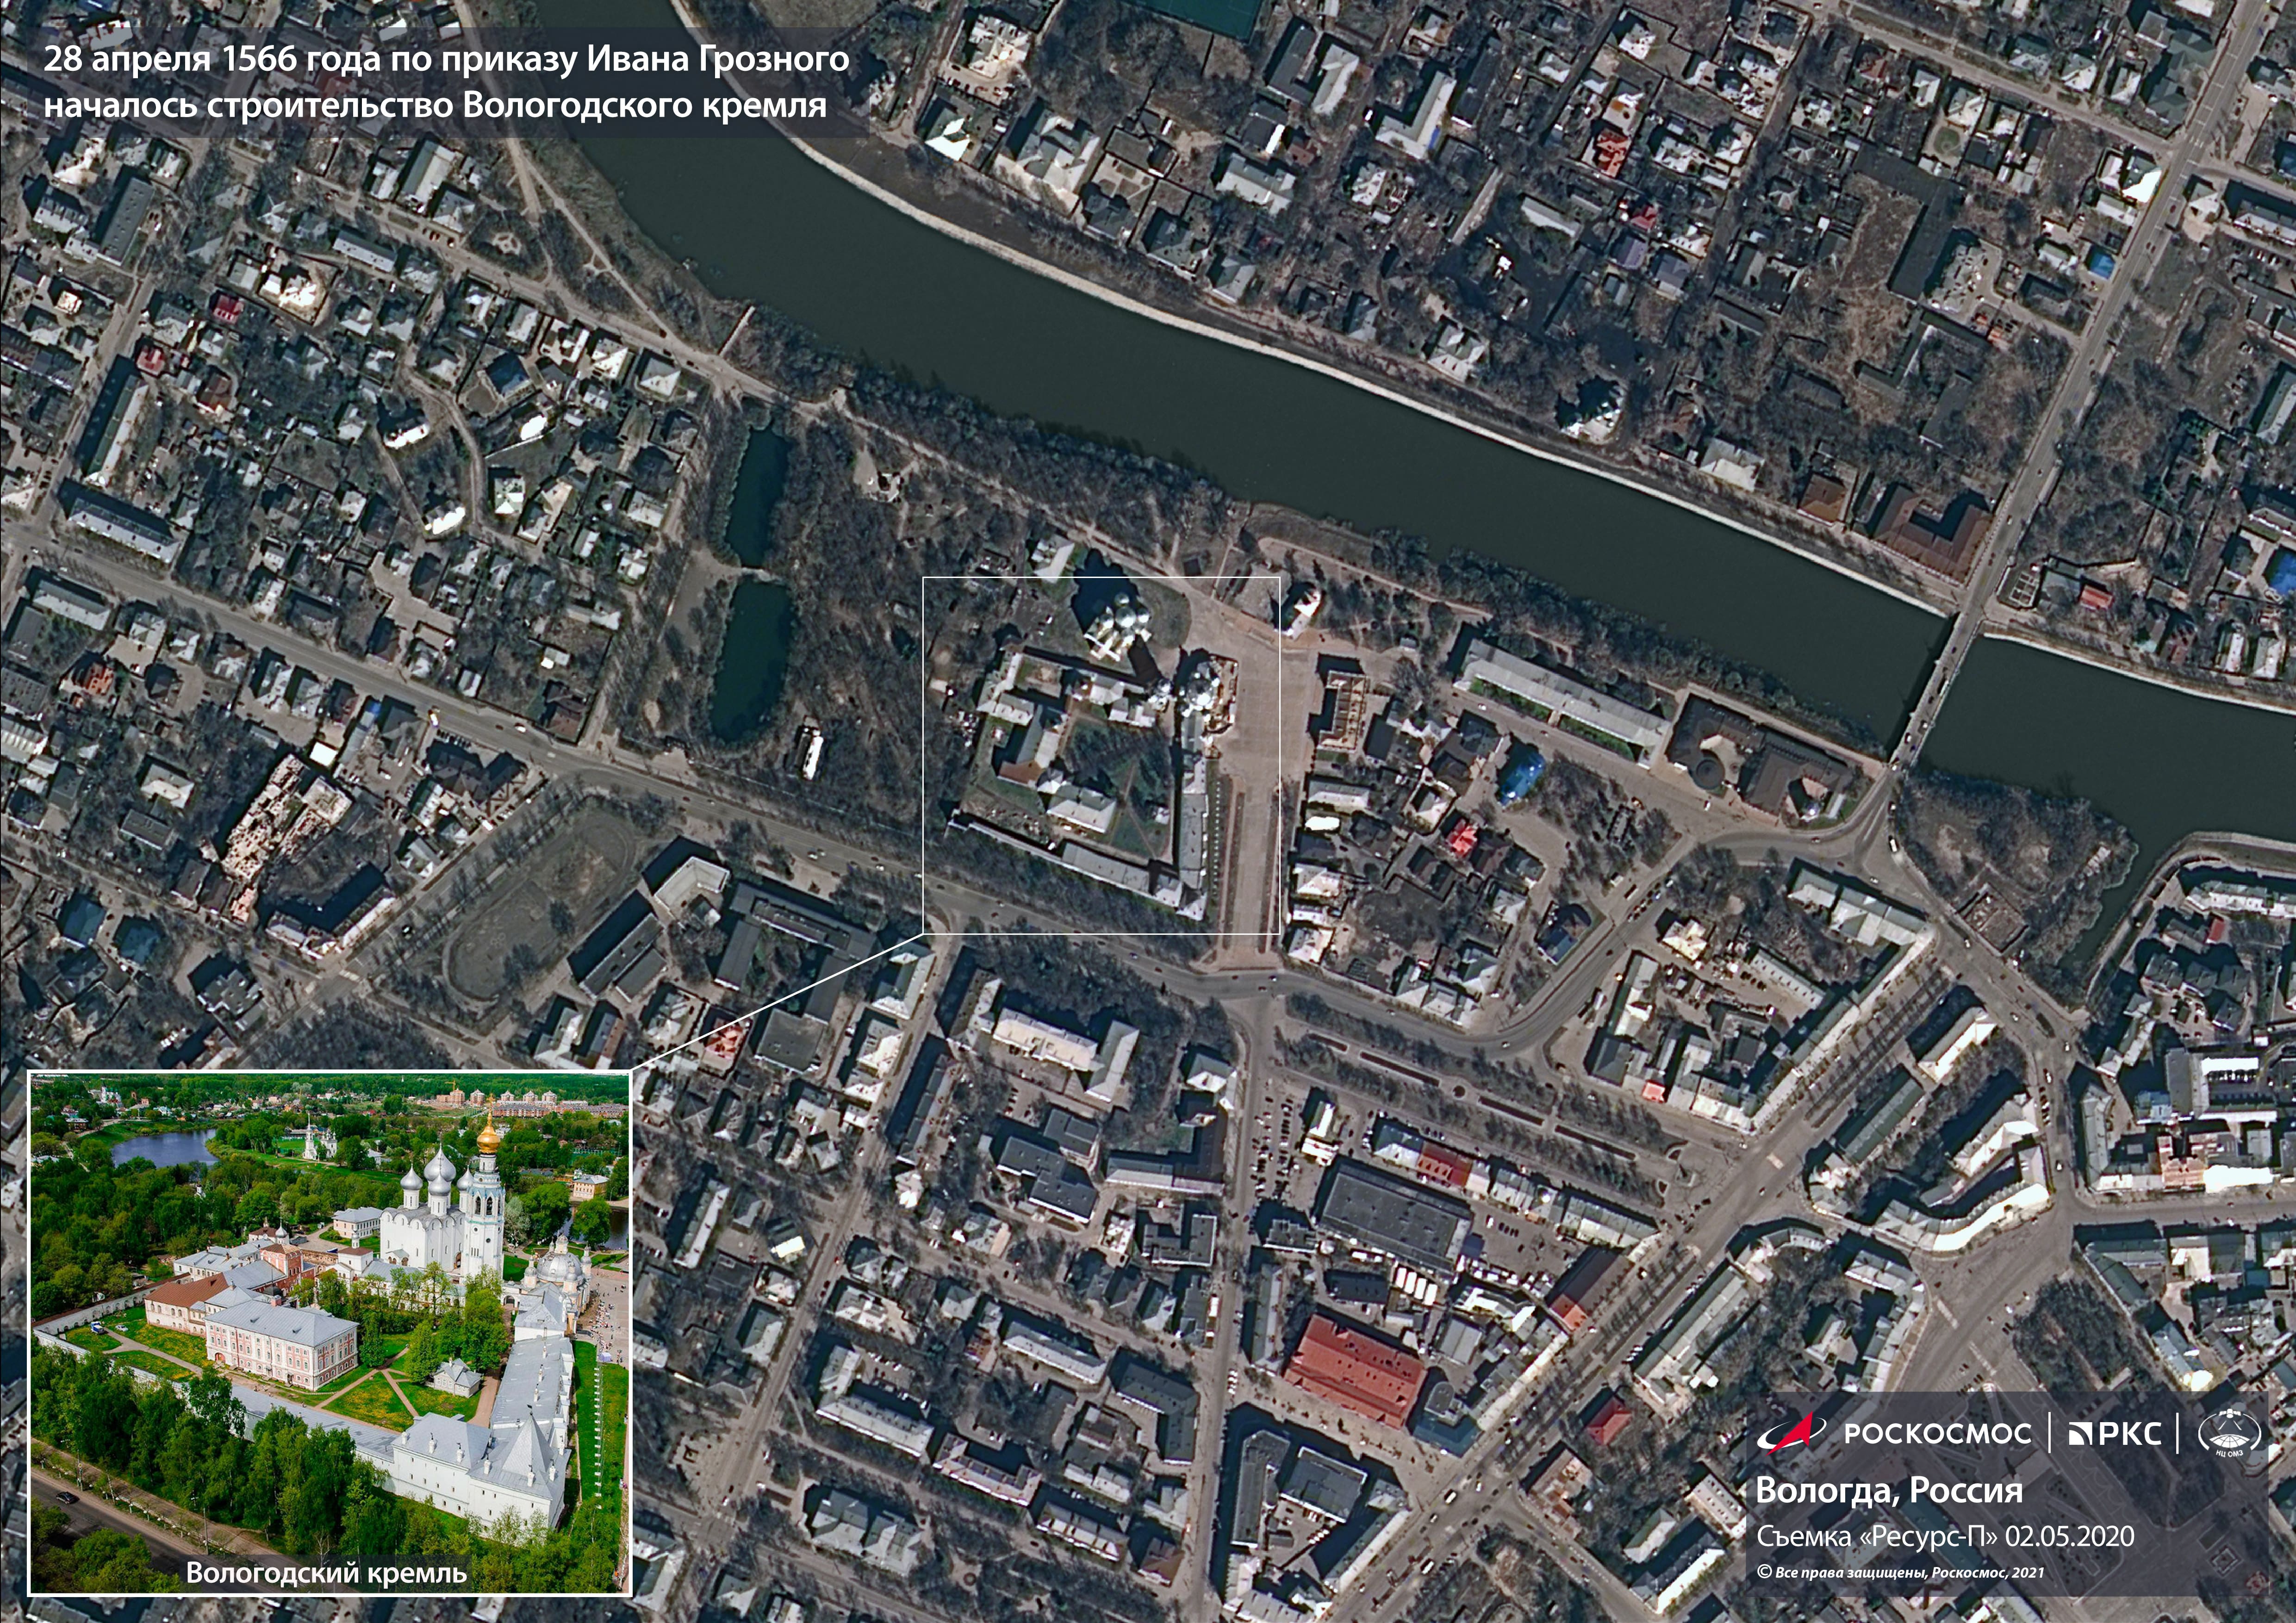 Улица спутника. 28 Апреля 1566 года началось строительство Вологодского Кремля. Кремль вид со спутника.